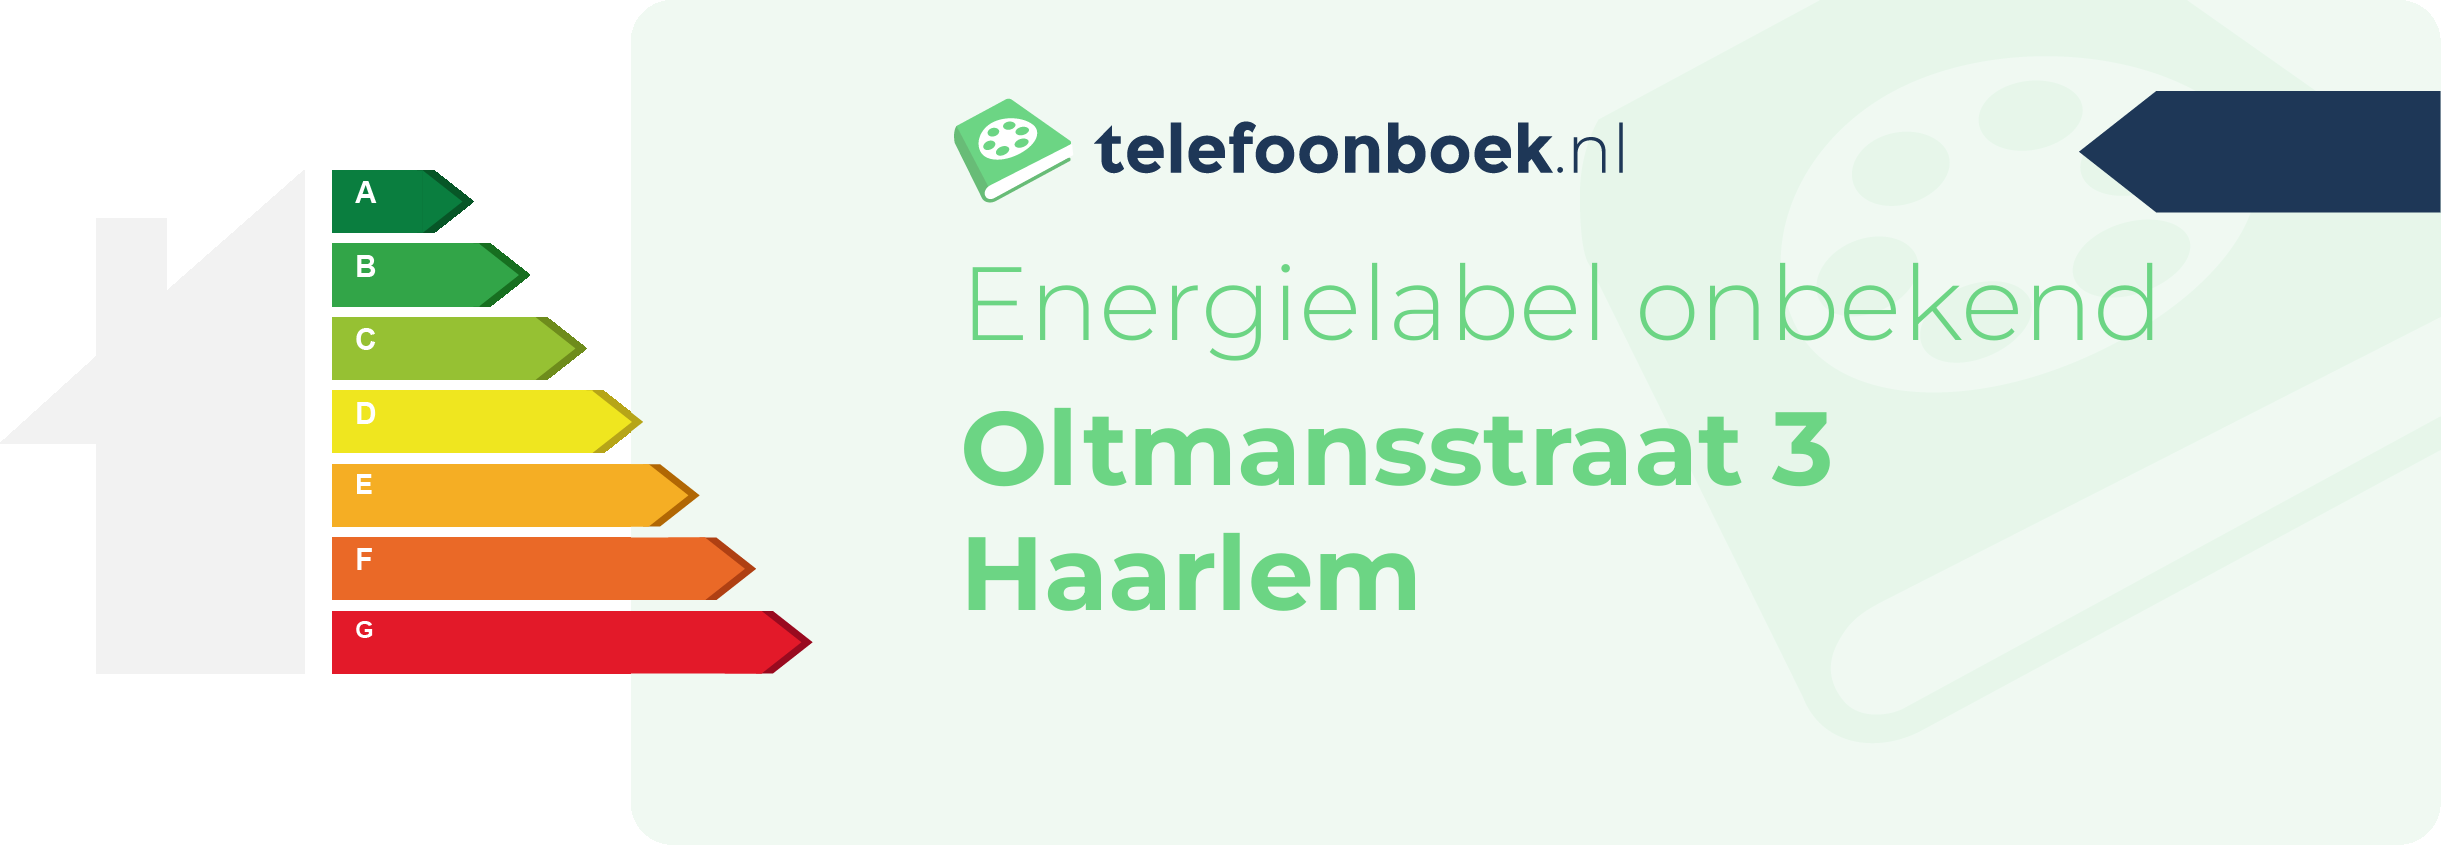 Energielabel Oltmansstraat 3 Haarlem